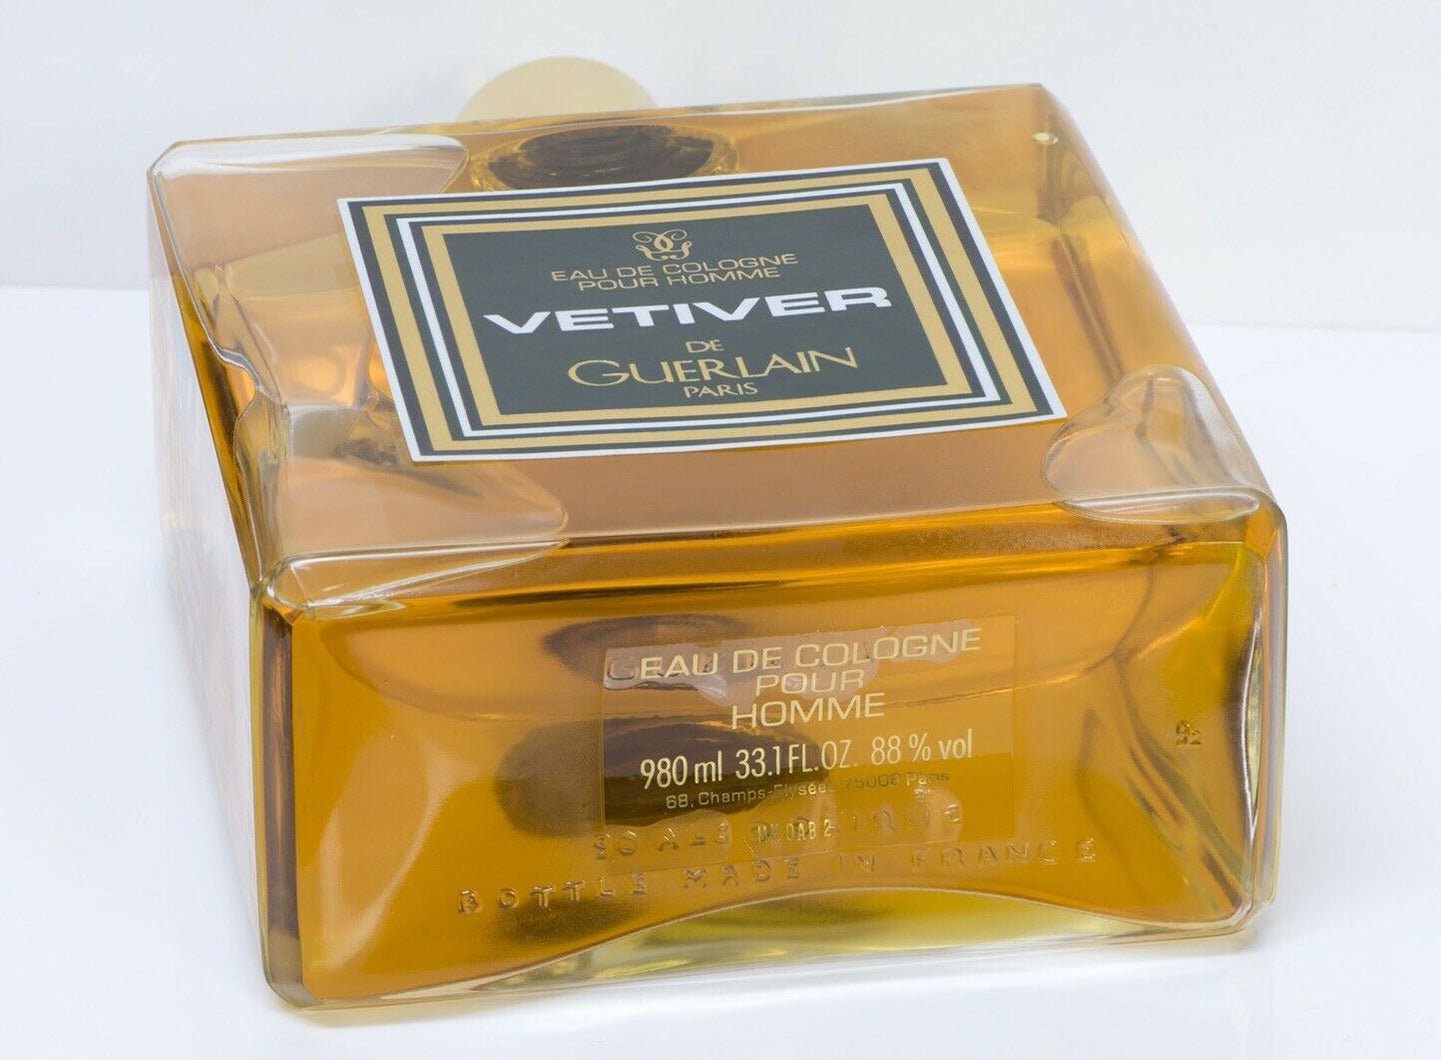 Vintage GUERLAIN Paris Vetiver Eau de Cologne Pour Homme Perfume 980ML 33.1OZ